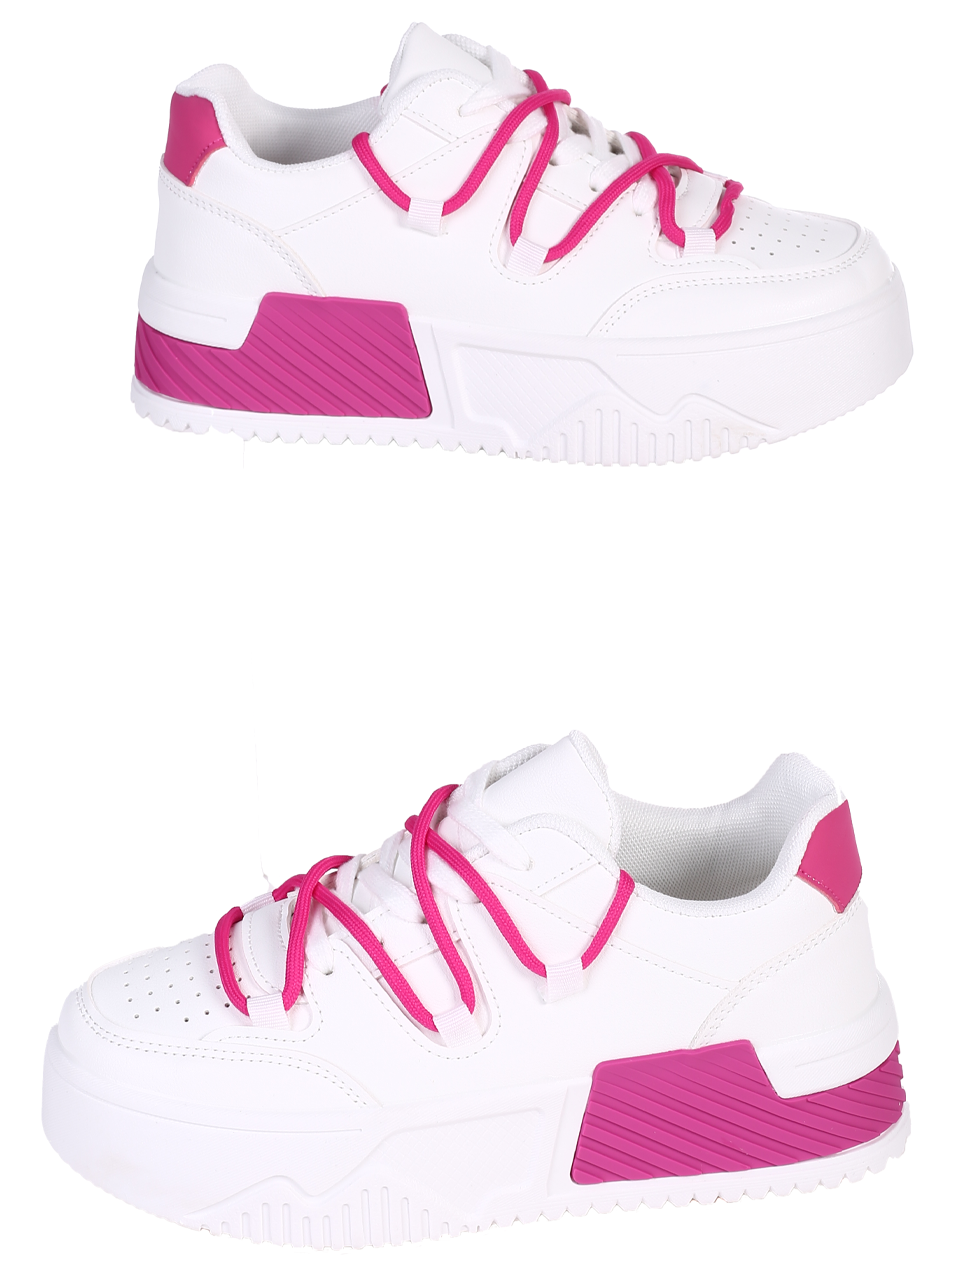 Ежедневни дамски обувки на платформа в бял/фуксия цвят 3U-24072 white/fuchsia